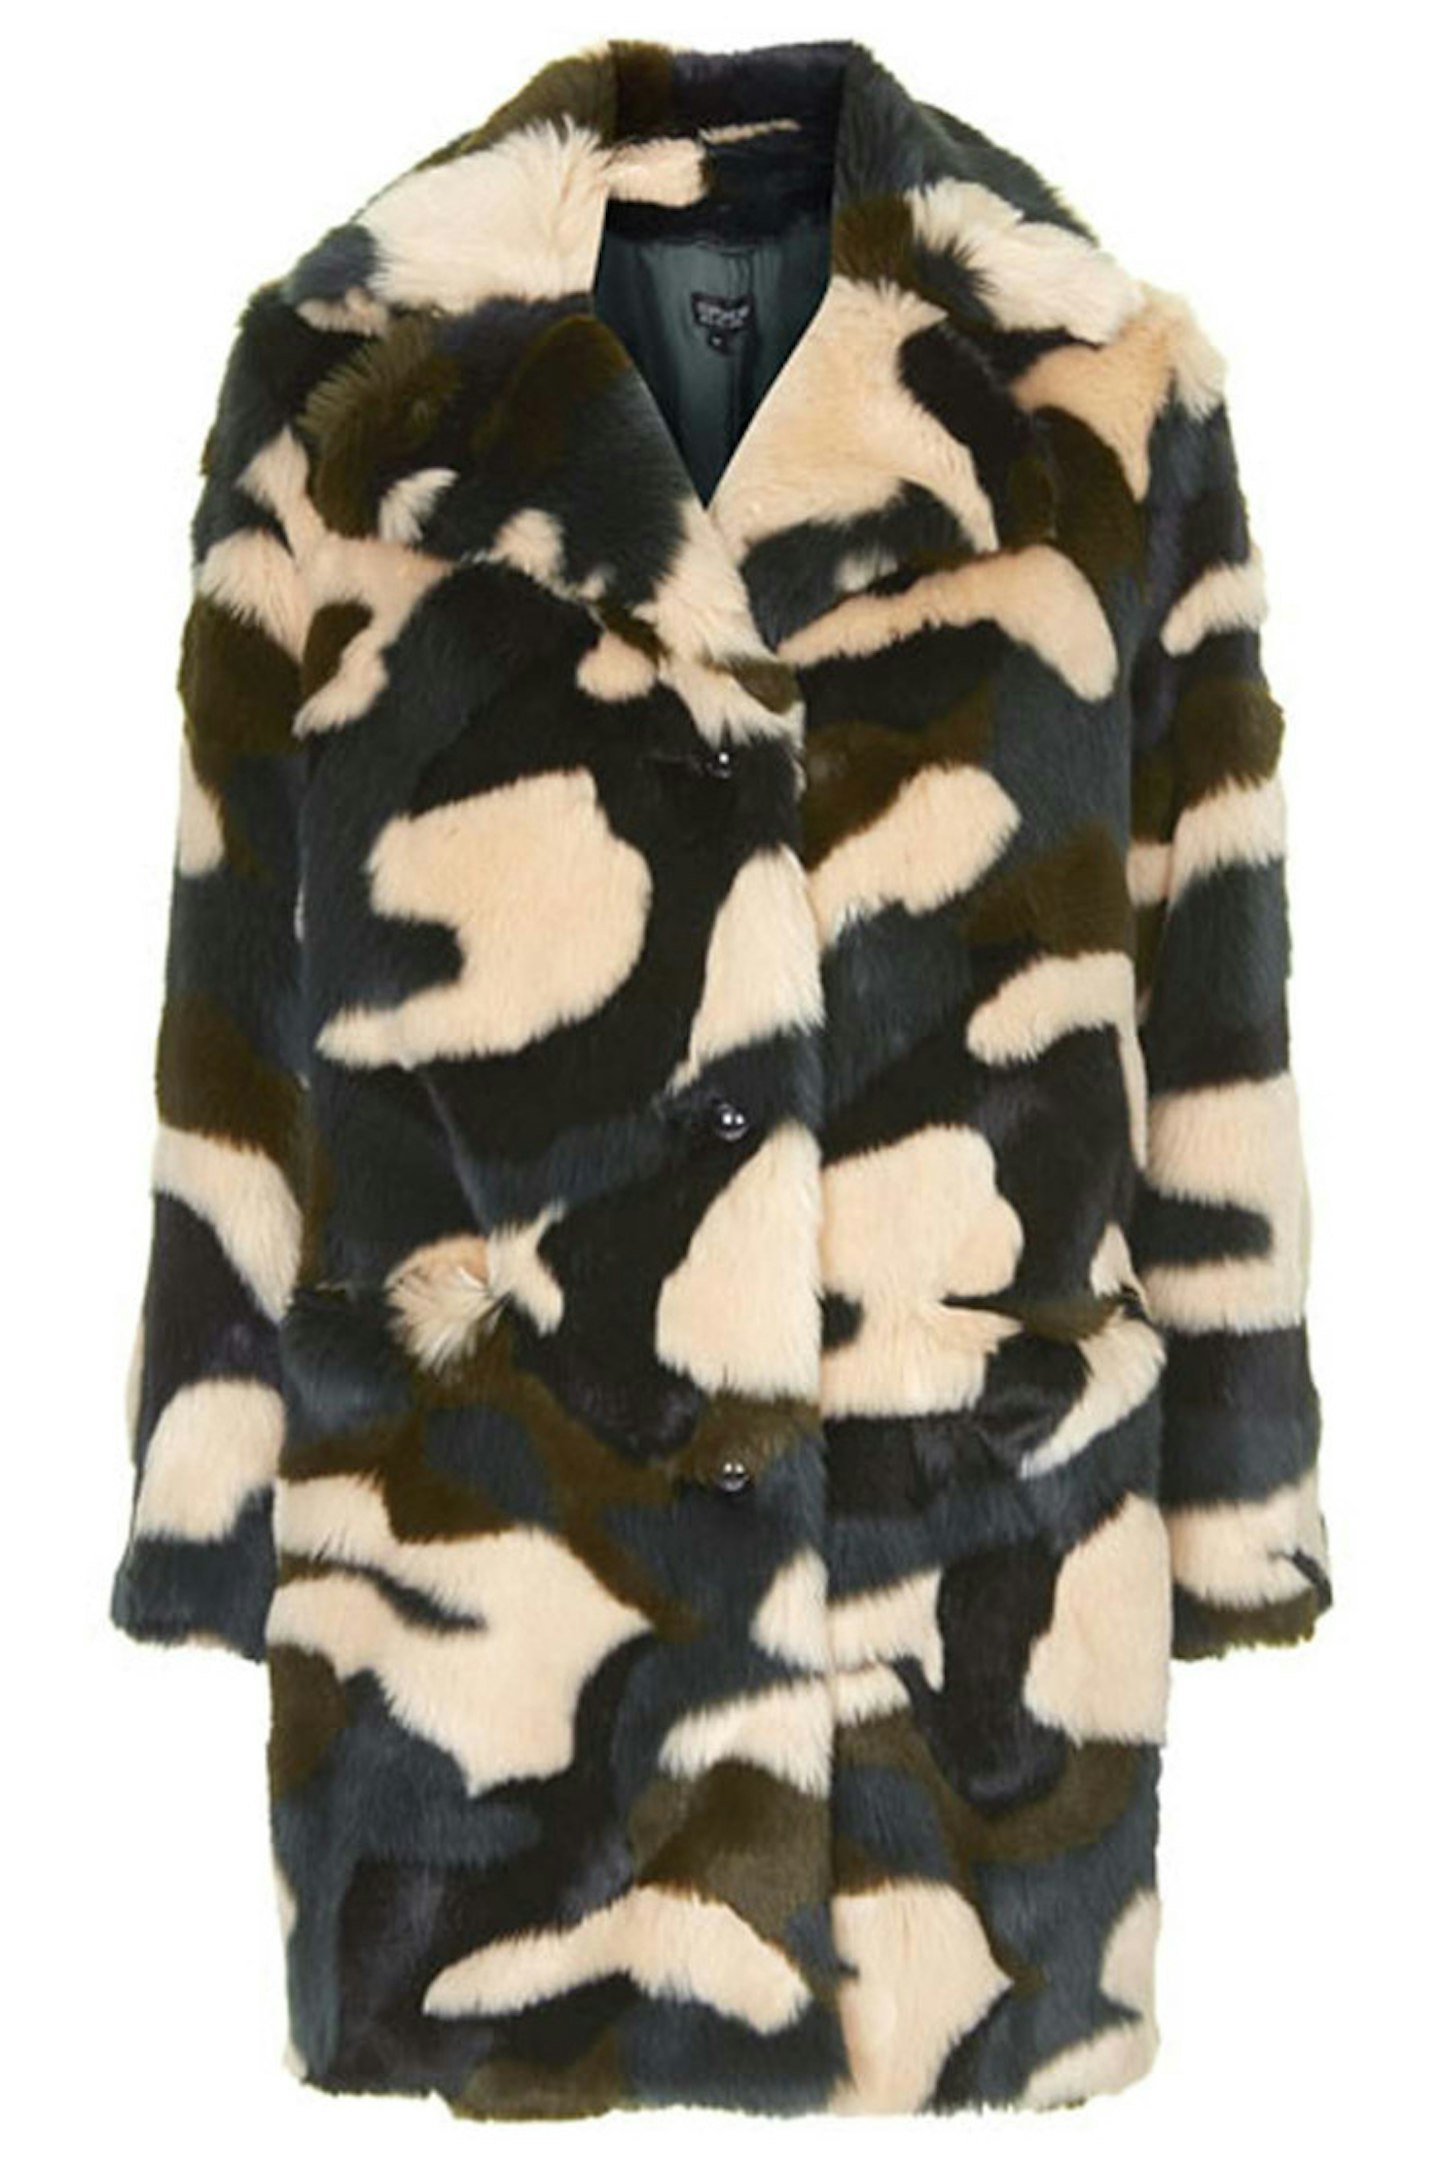 Coat, £95, Topshop